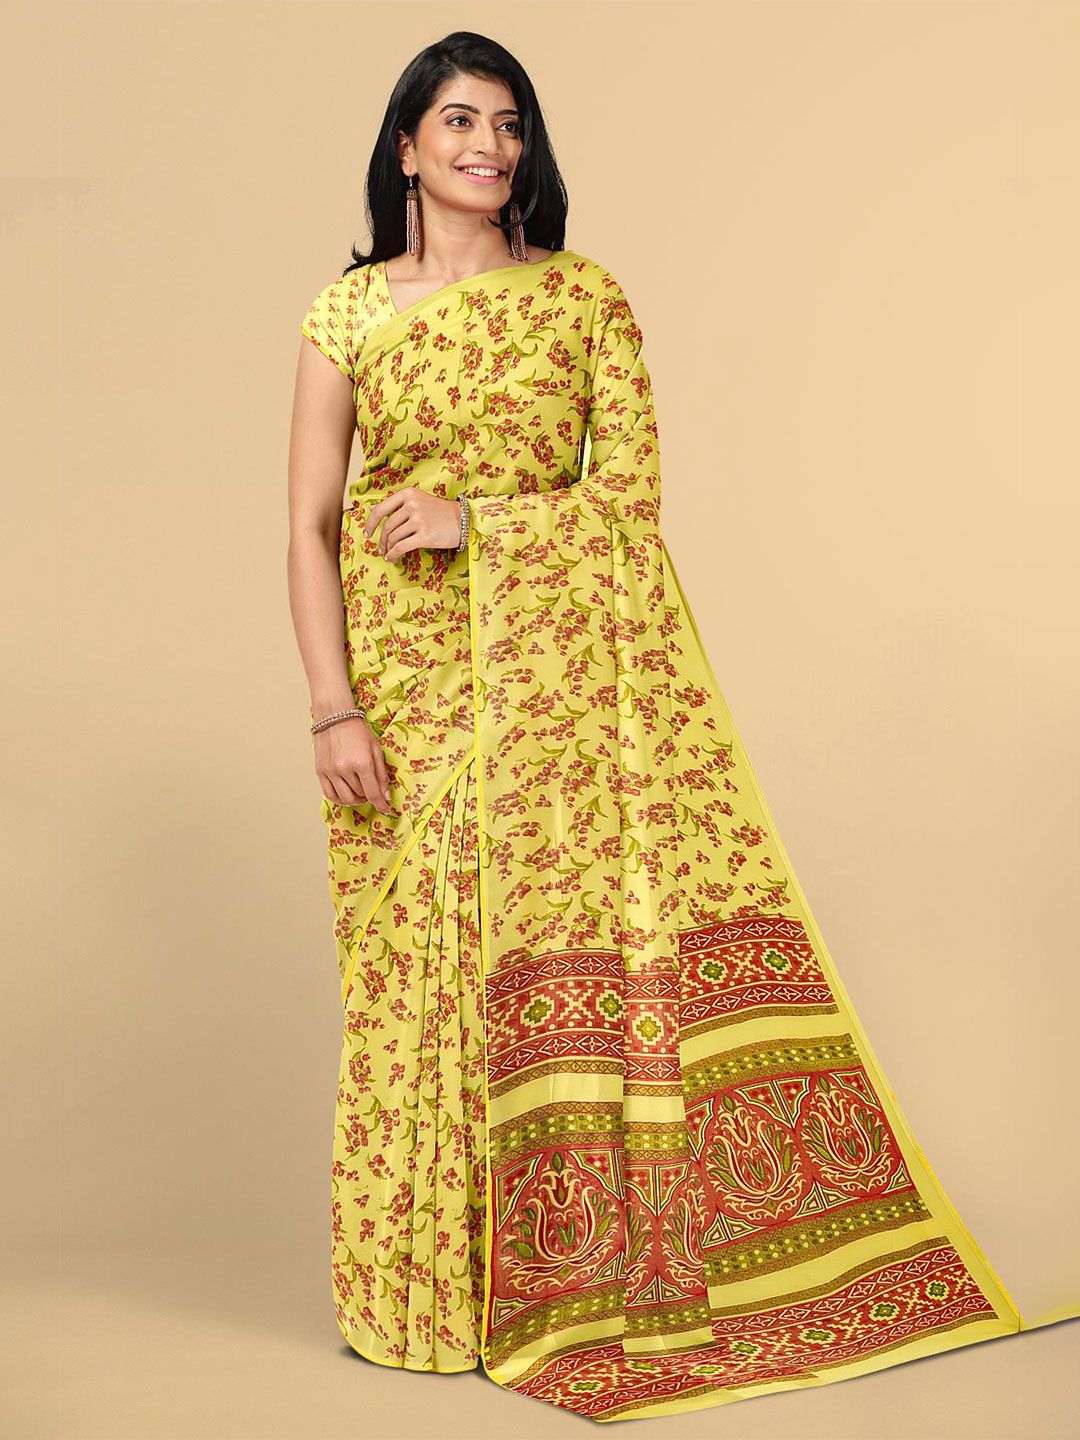 Kalamandir Yellow & Red Floral Saree Price in India